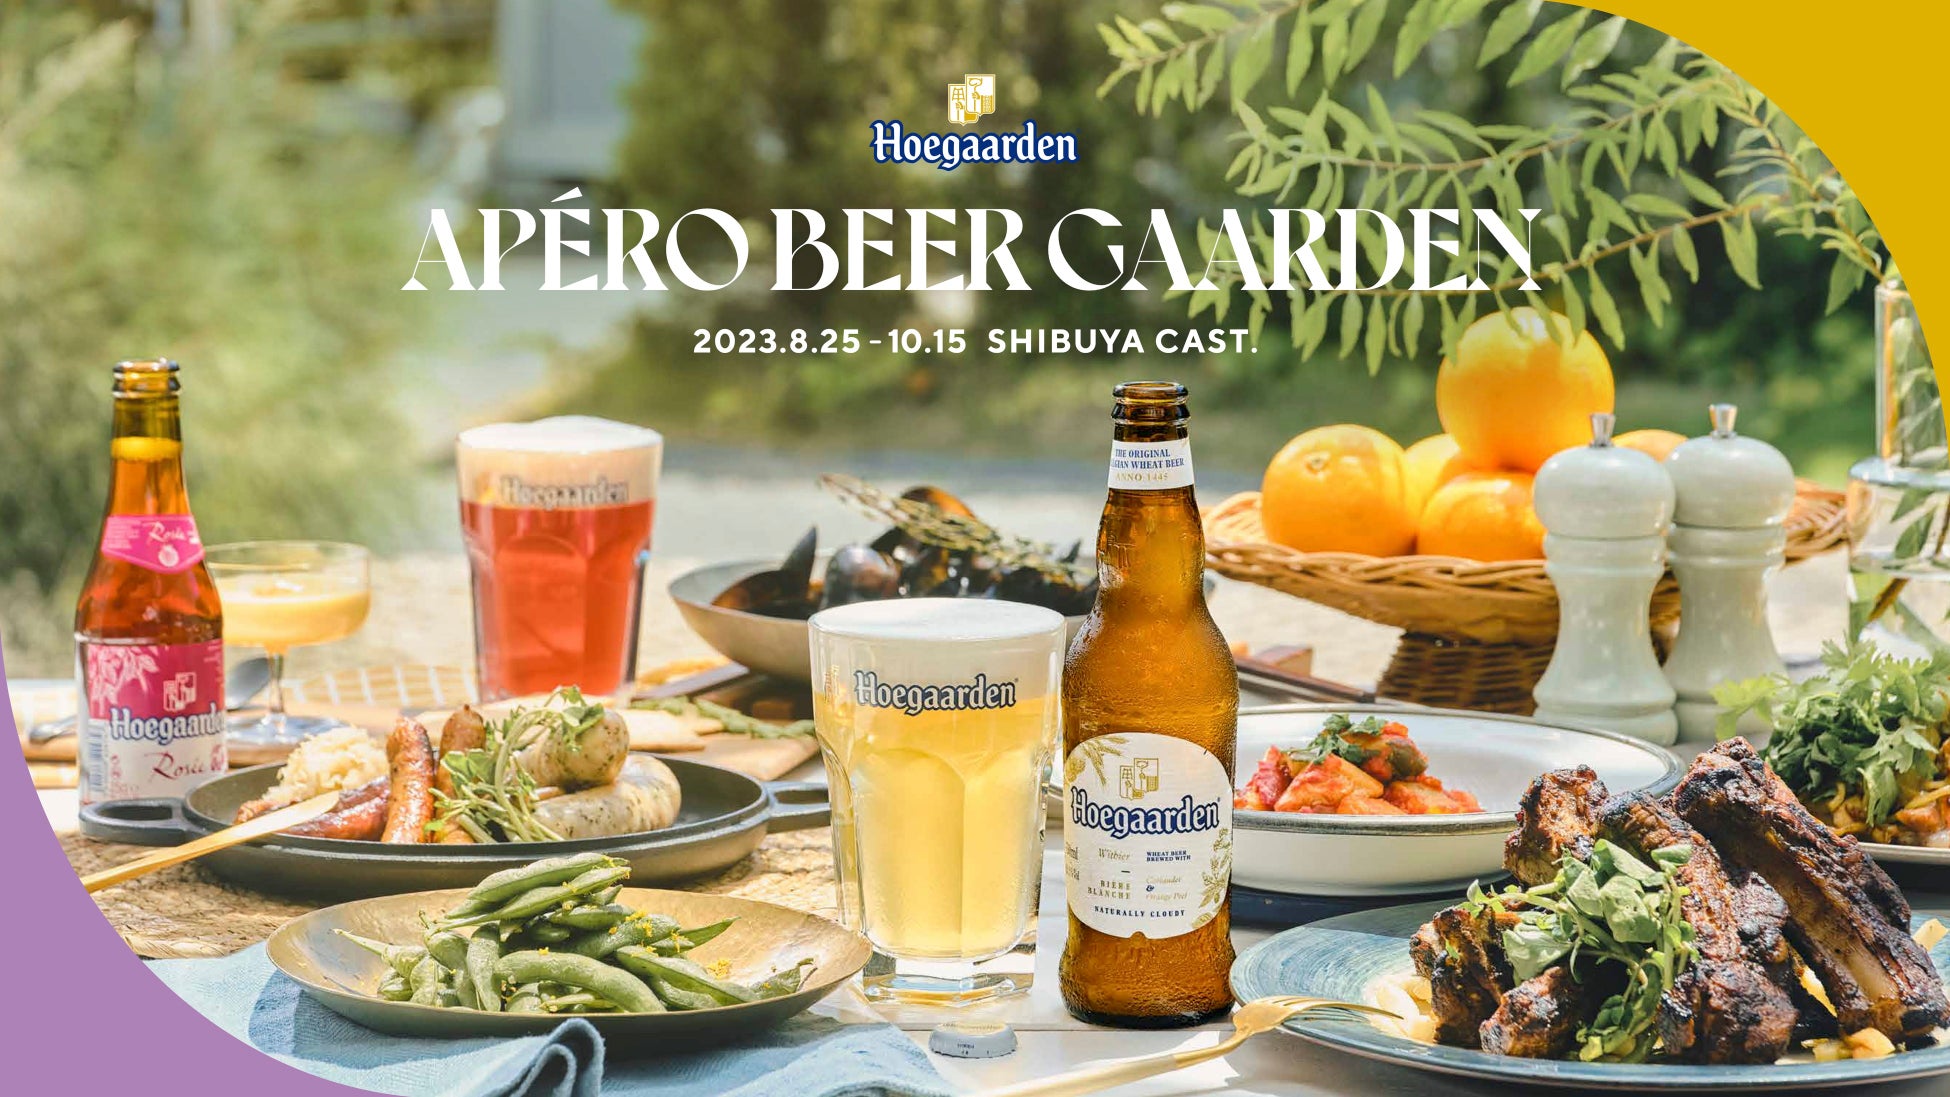 豊かな時間がはじまるヒューガルデンの秋のビアガーデン「Hoegaarden APÉRO BEER GAARDEN」が今年も渋谷キャストで開催